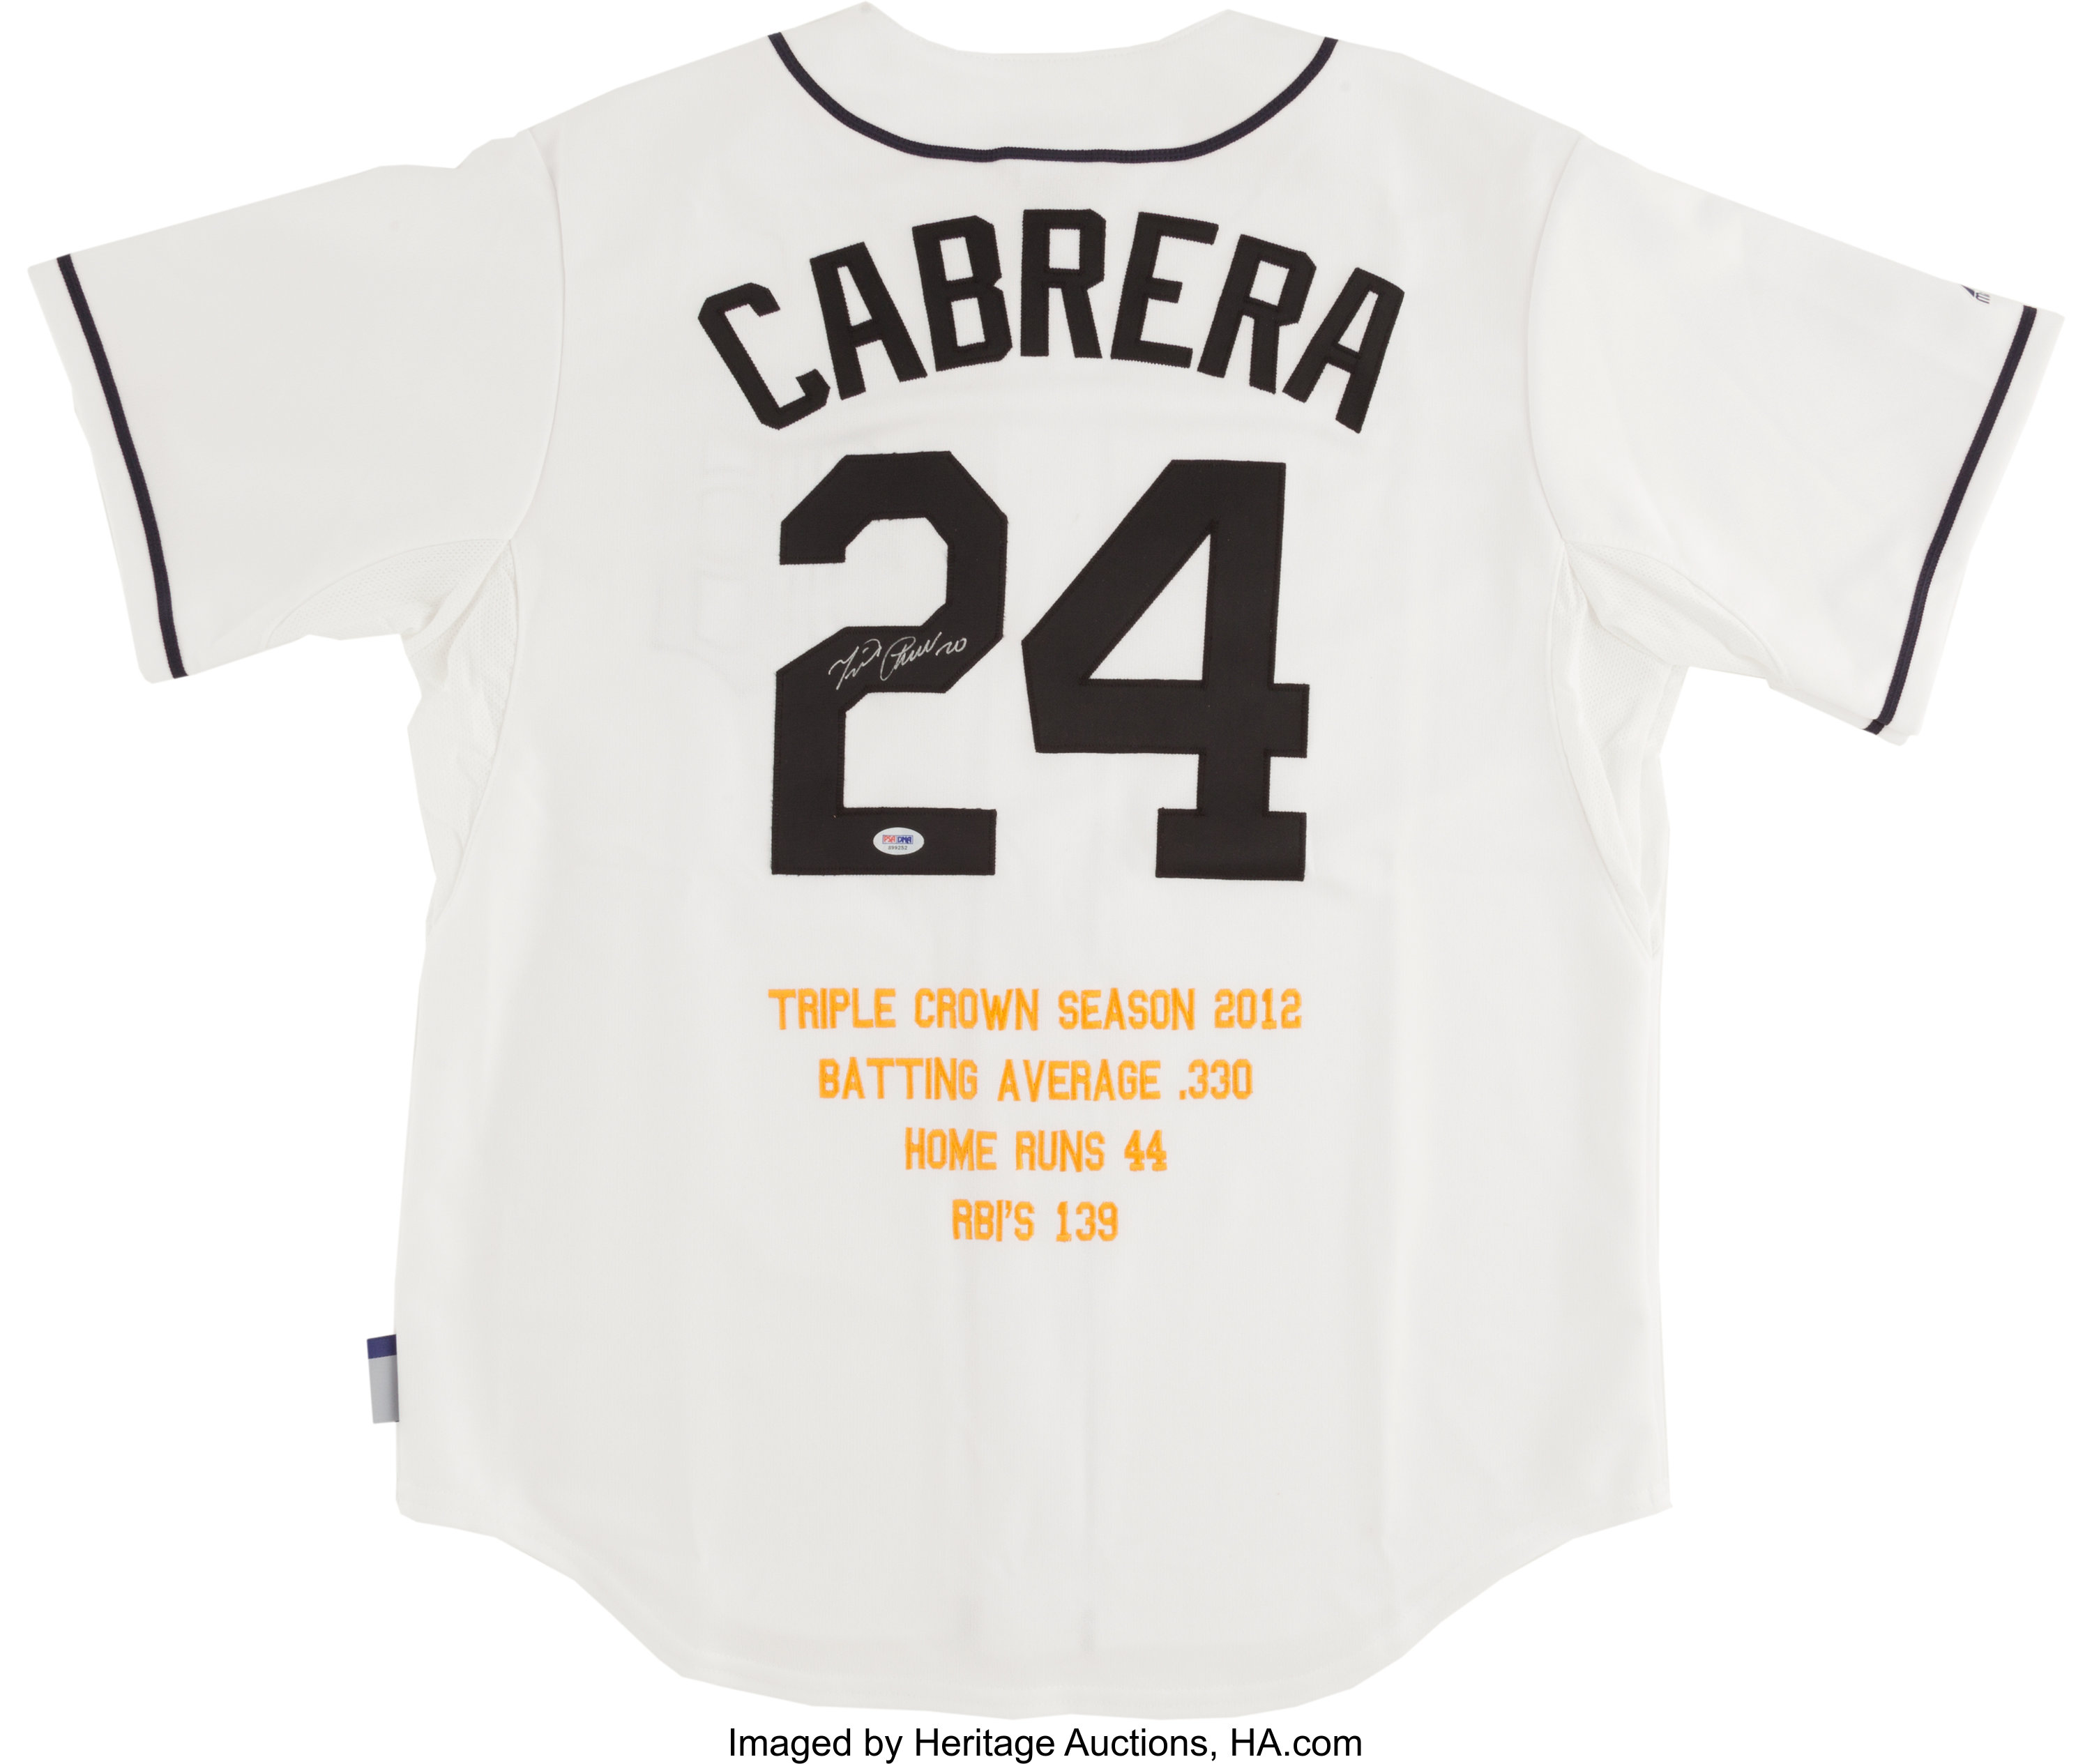 Cabrera Exclusive! Miguel Cabrera Detroit Tigers Game-Used Road